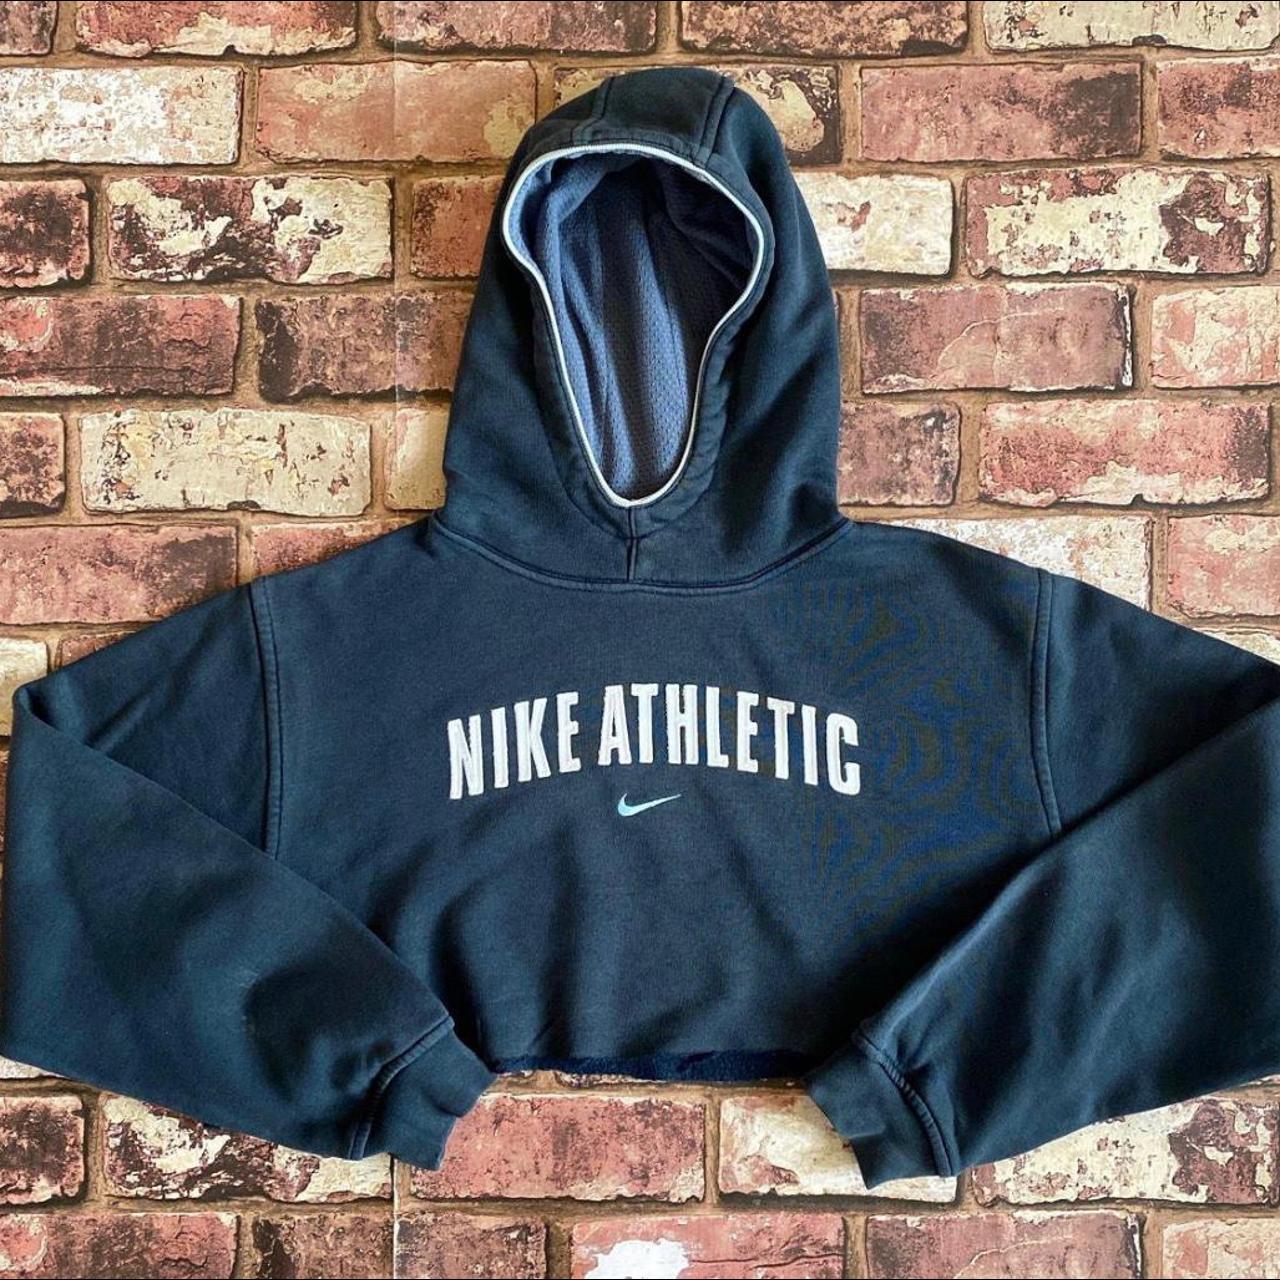 Nike navy athletic cropped 90s hoodie Worn a... - Depop